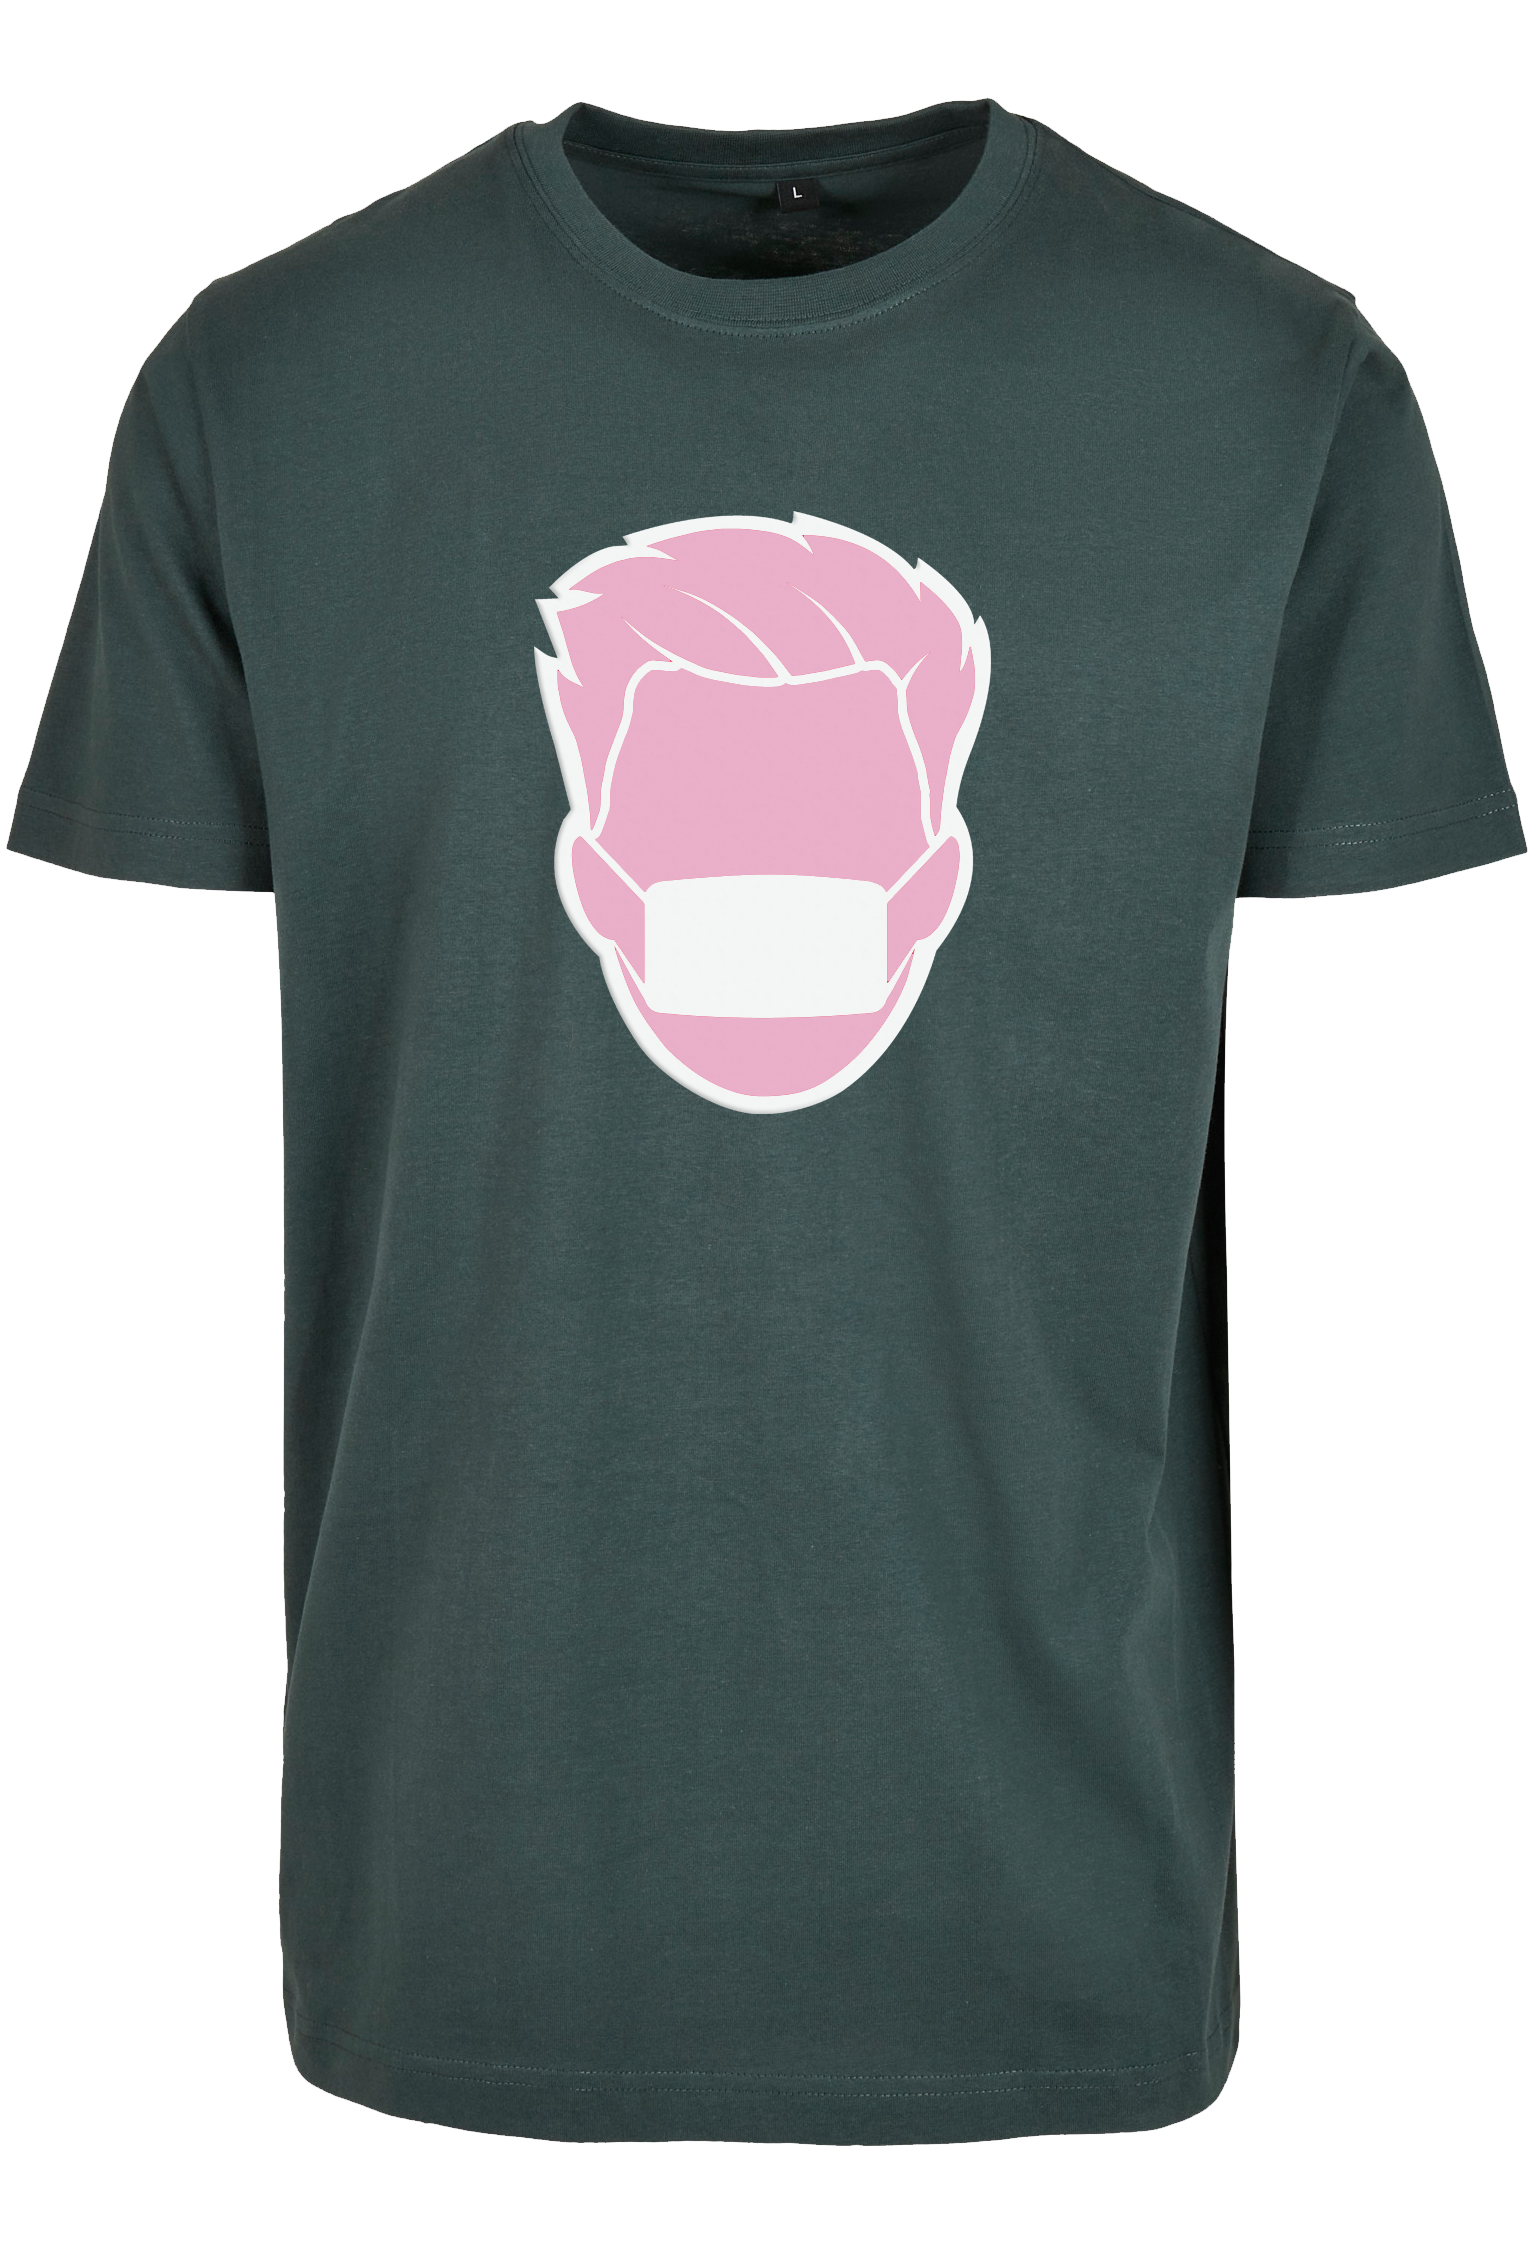 Pinball bottlegreen T-Shirt